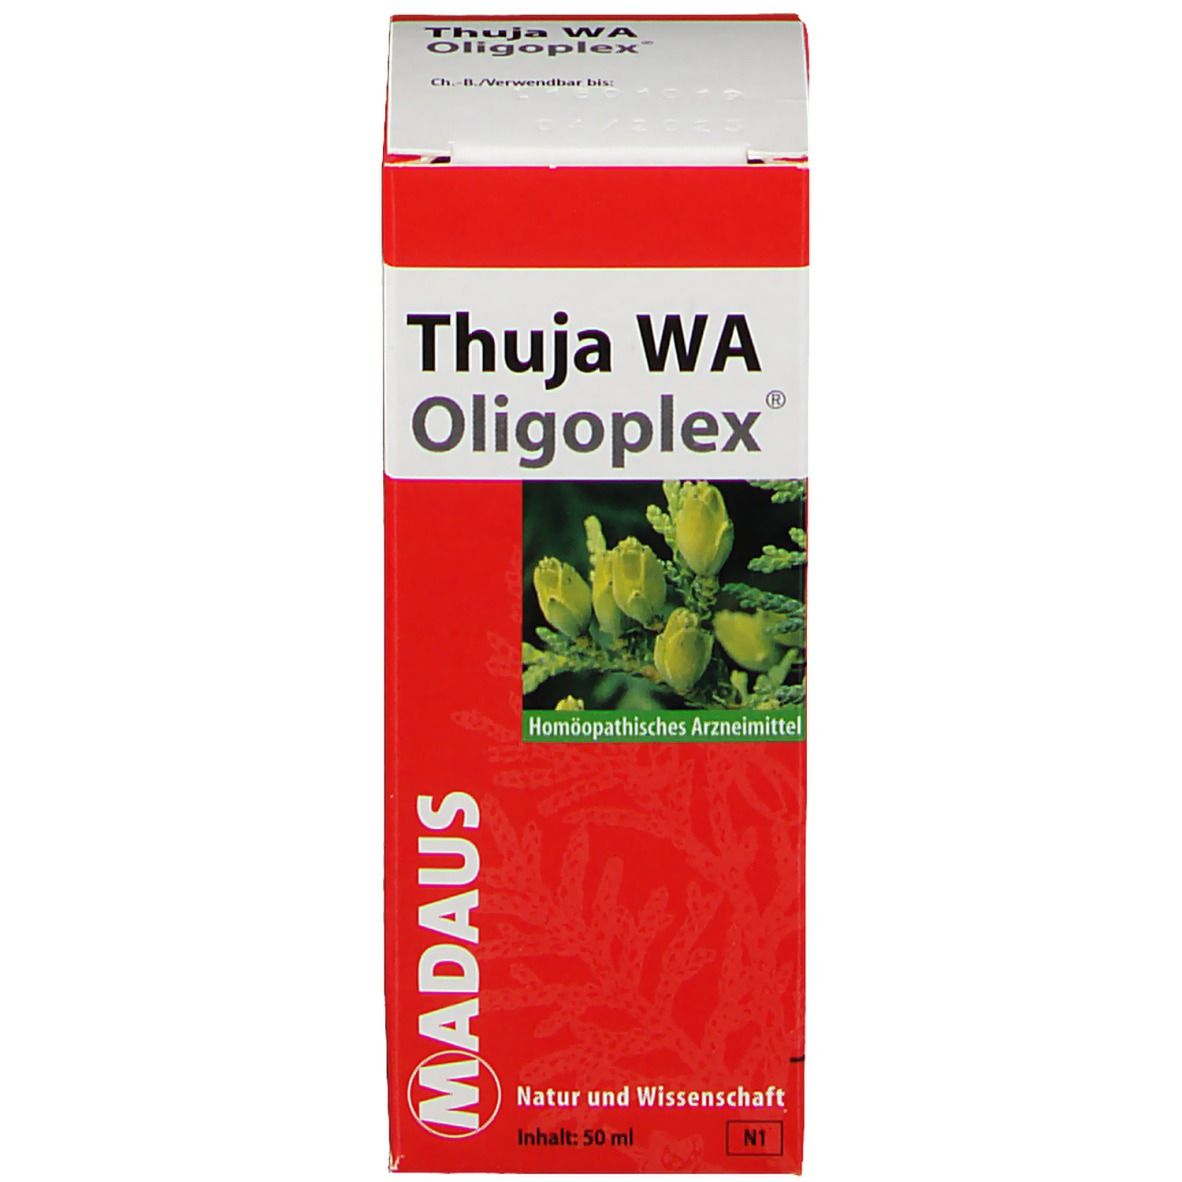 Thuja WA Oligoplex®